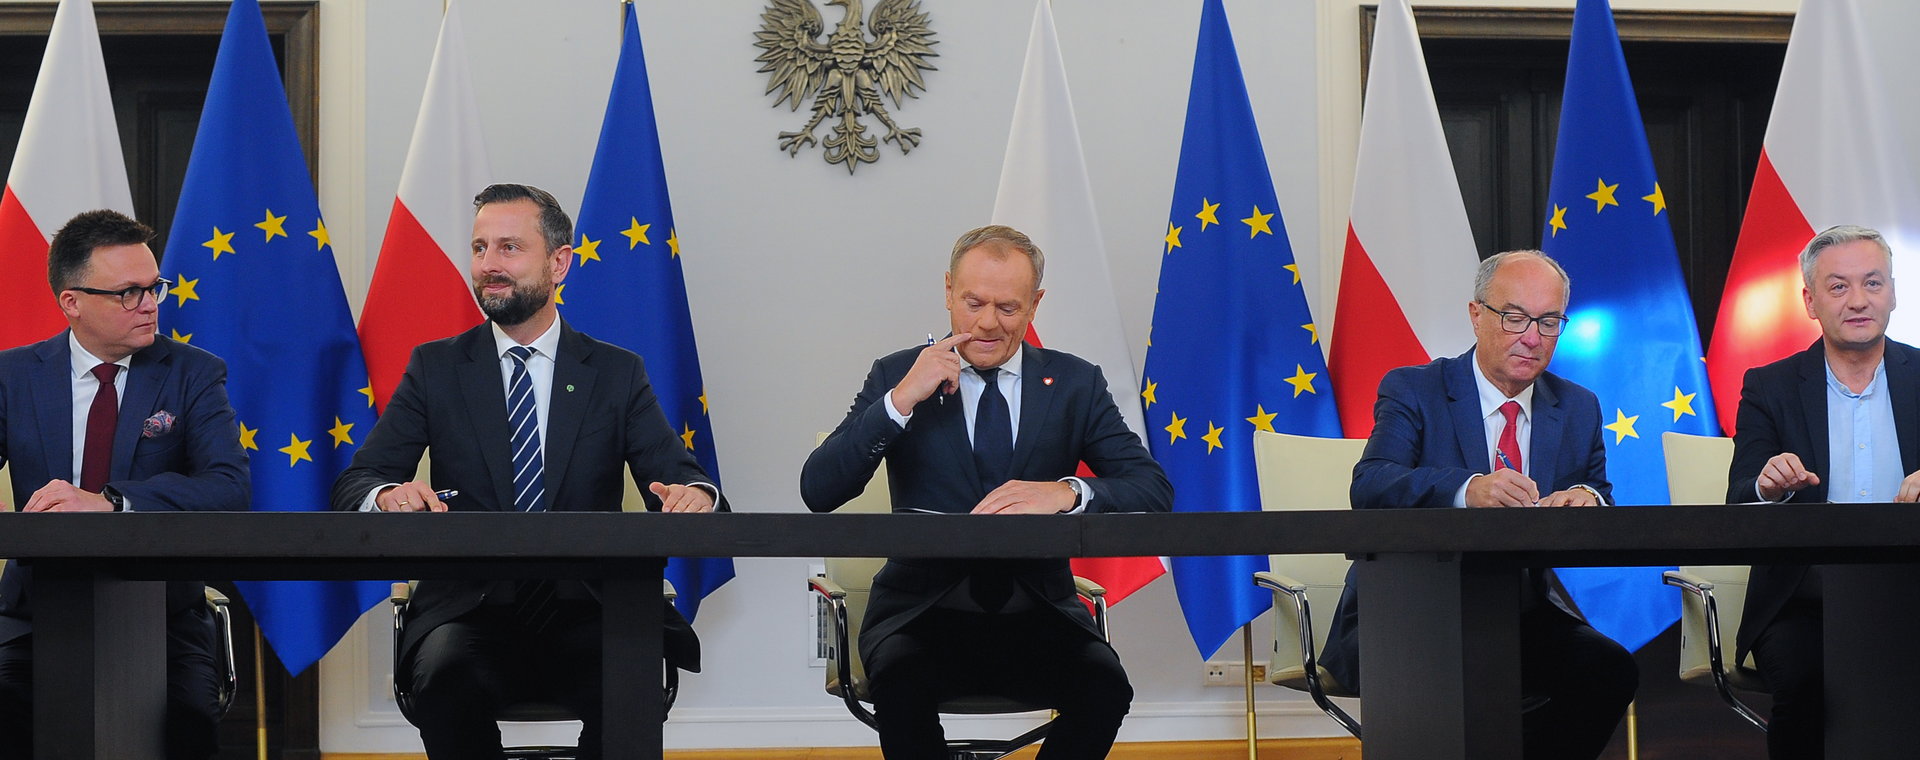 Liderzy nowej władzy podczas podpisania umowy koalicyjnej. Od lewej: Szymon Hołownia, Władysław Kosiniak-Kamysz, Donald Tusk, Włodzimierz Czarzasty i Robert Biedroń